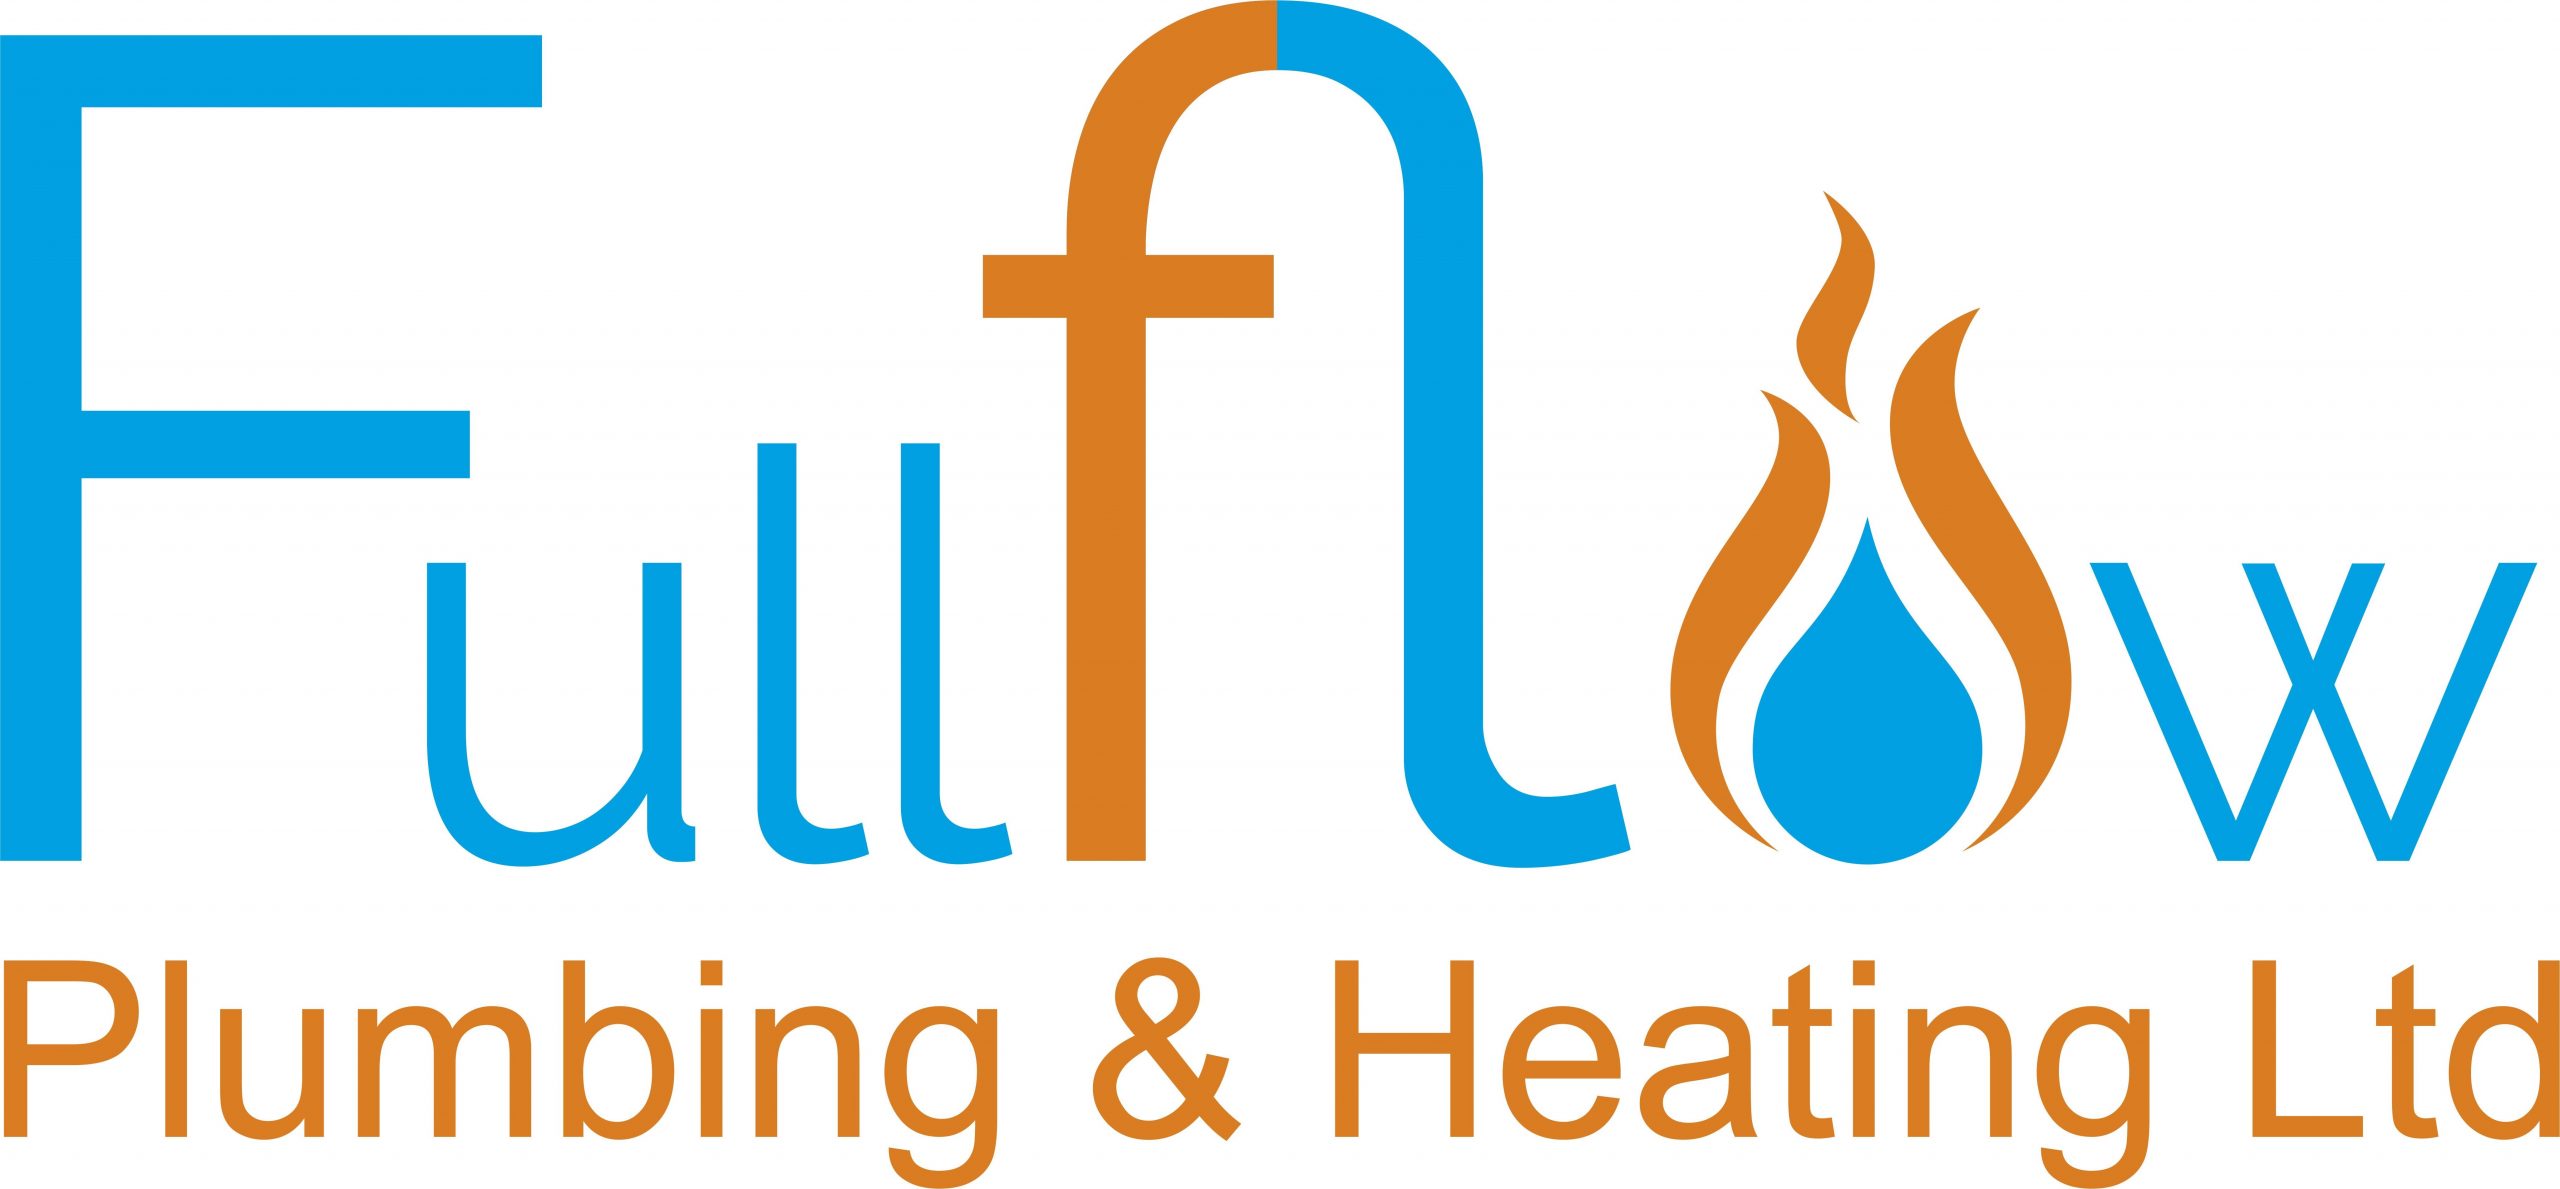 new fullflow logo